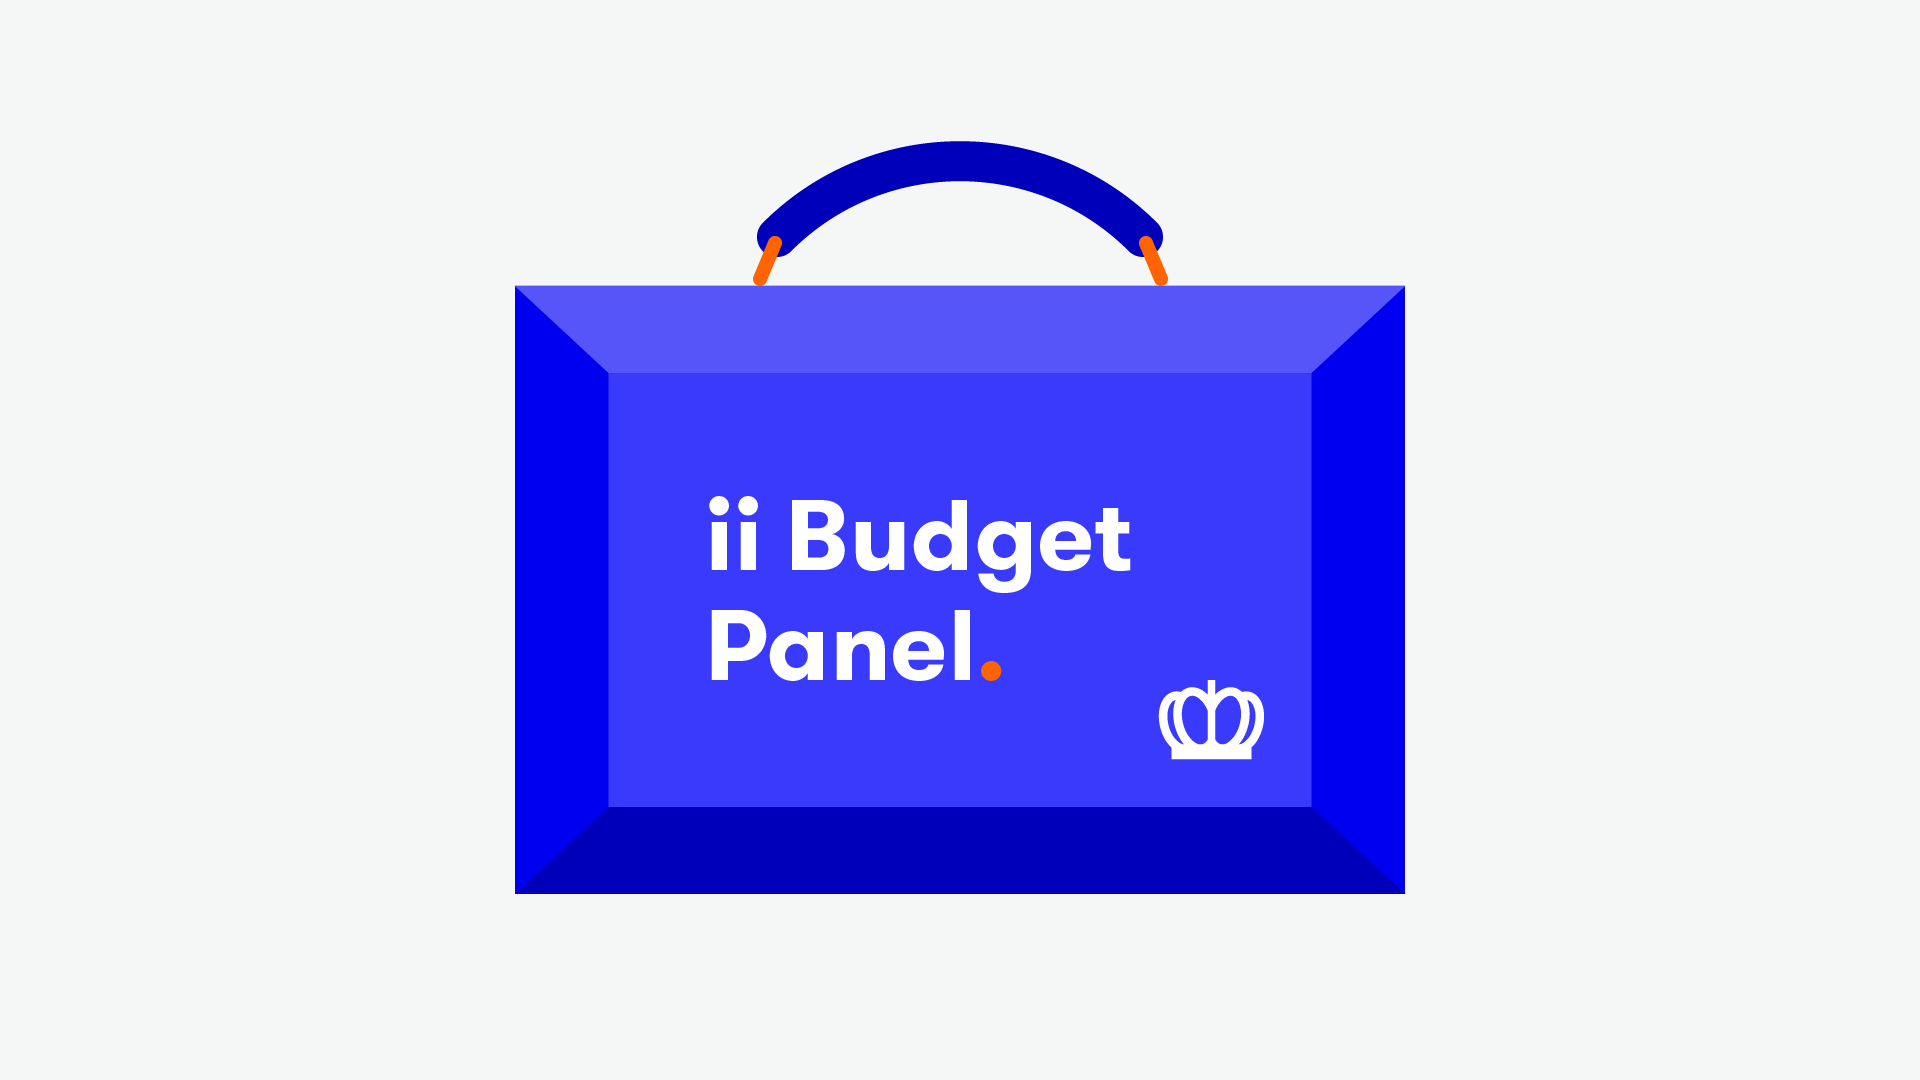 ii Budget Panel